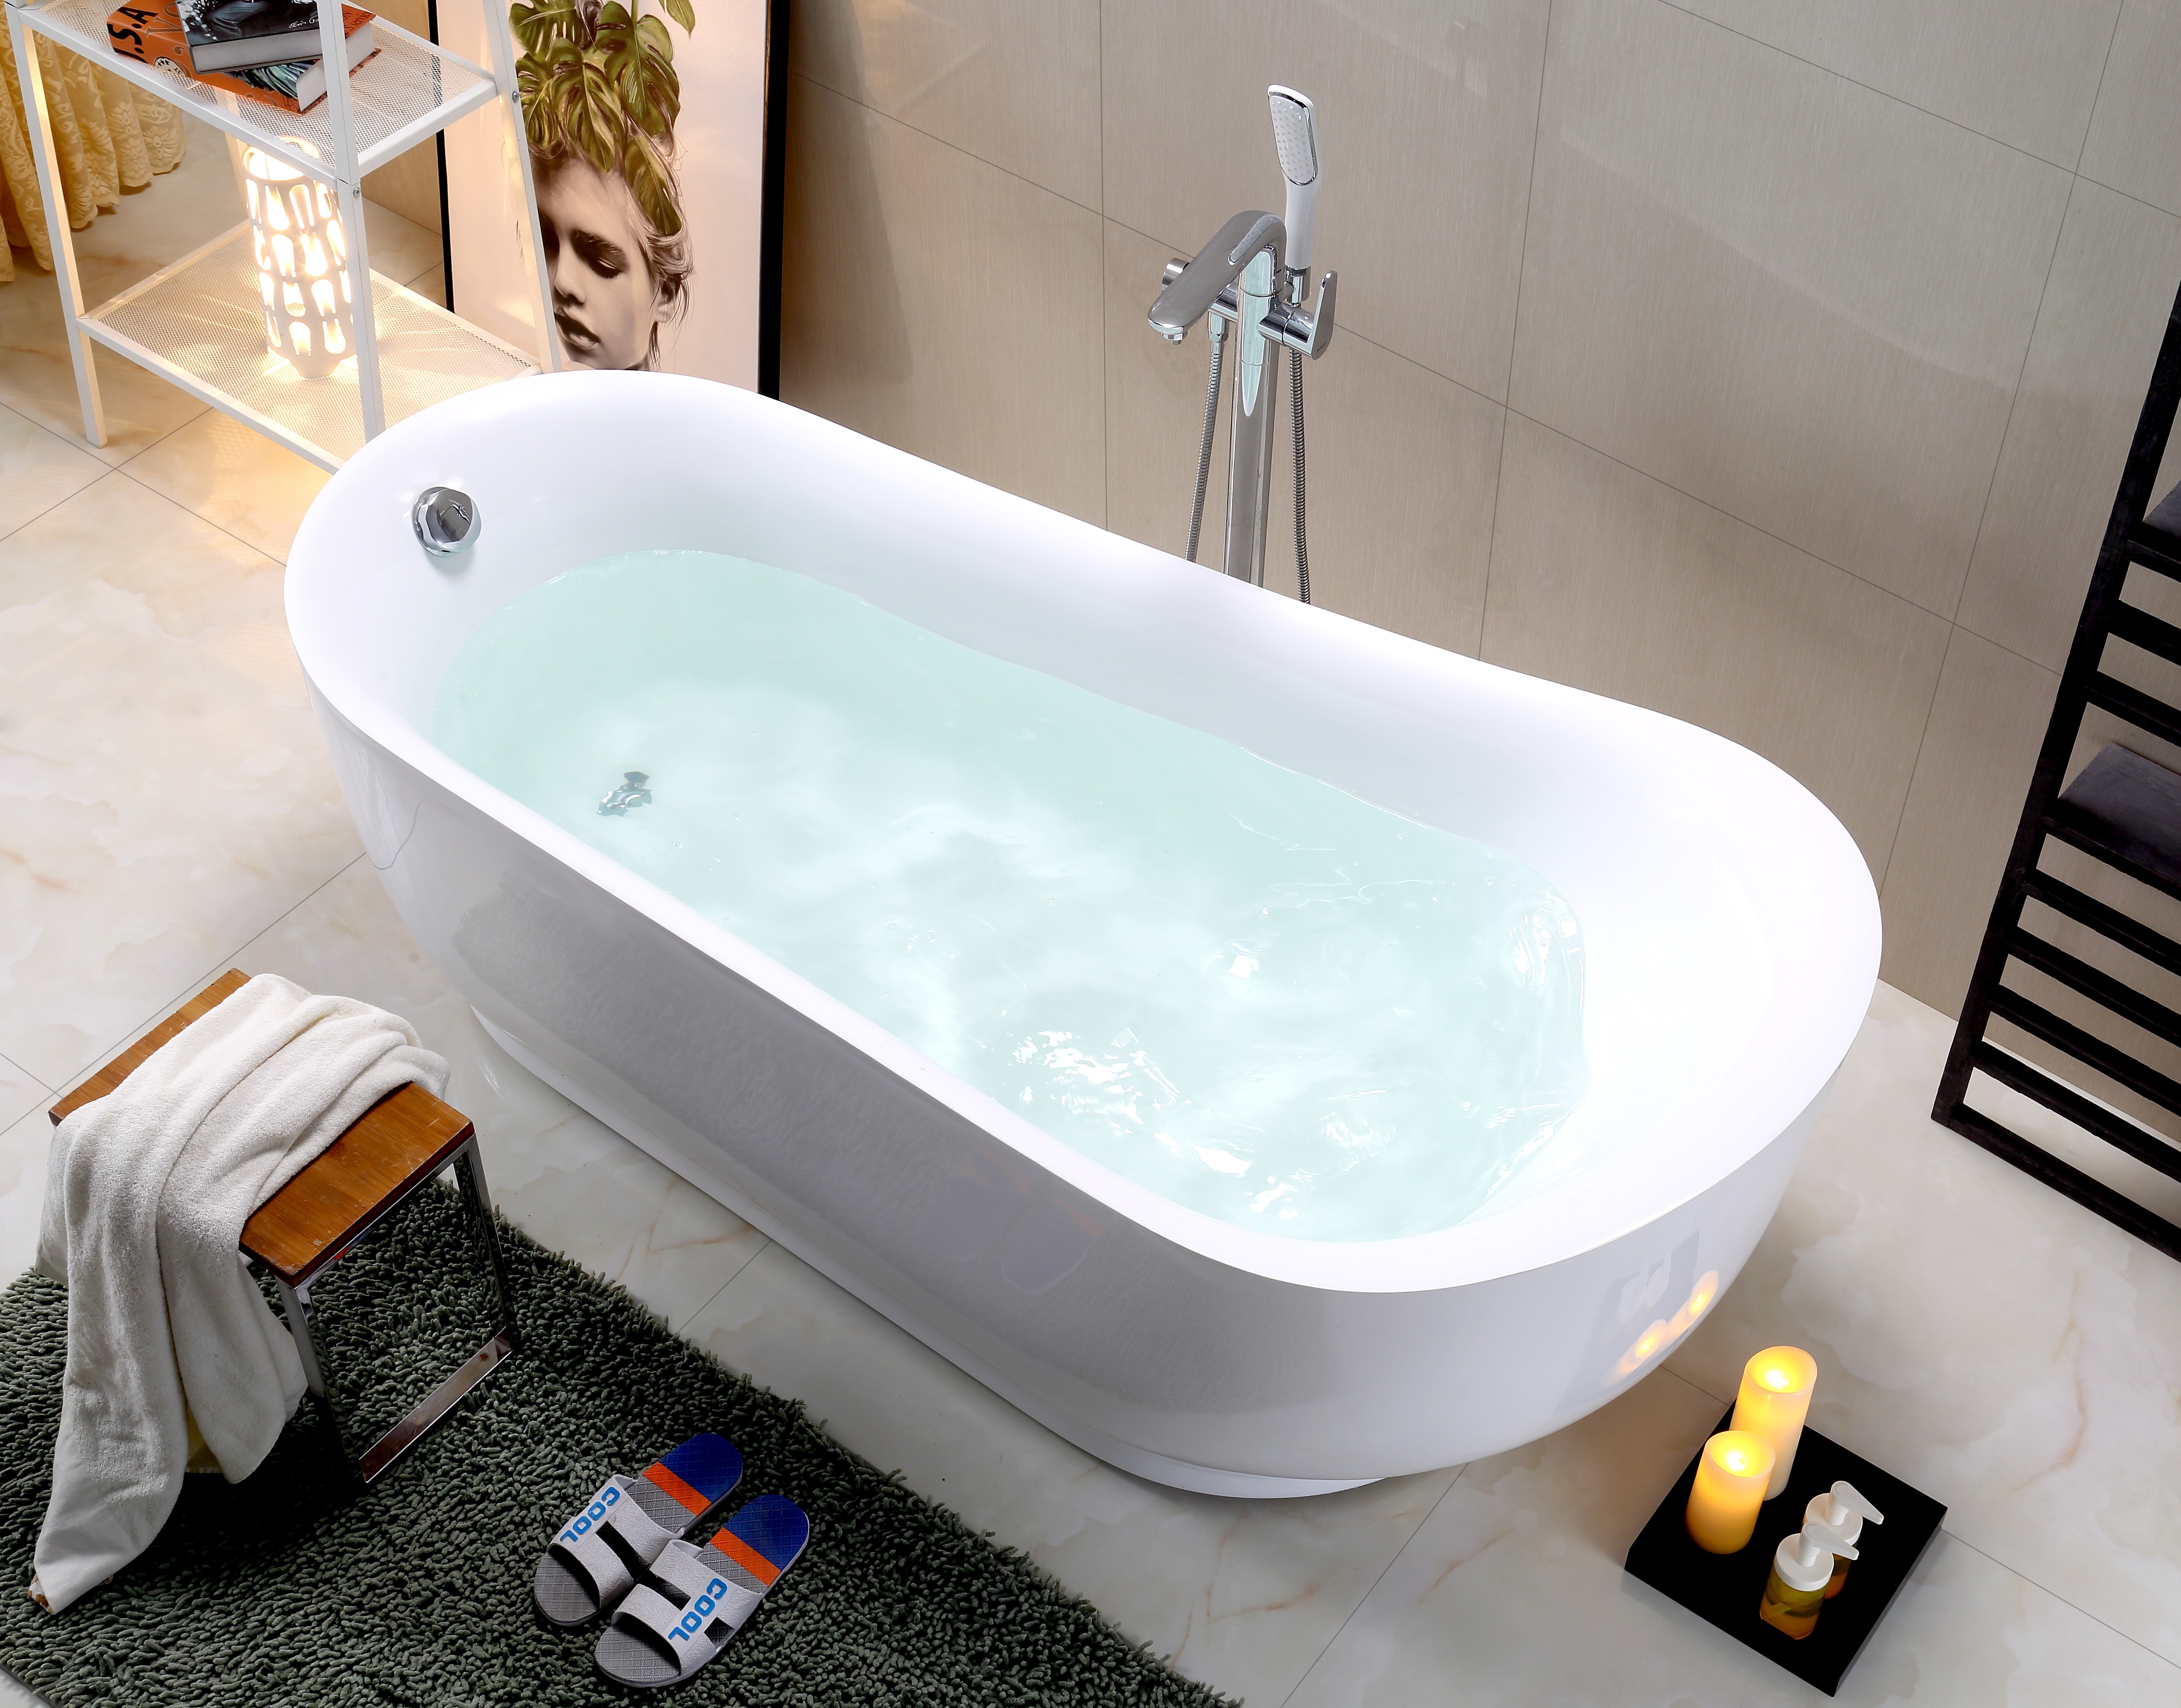 卫浴厂家直销新款独立浴缸欧式亚克力浴缸家居SPA双人浴盆